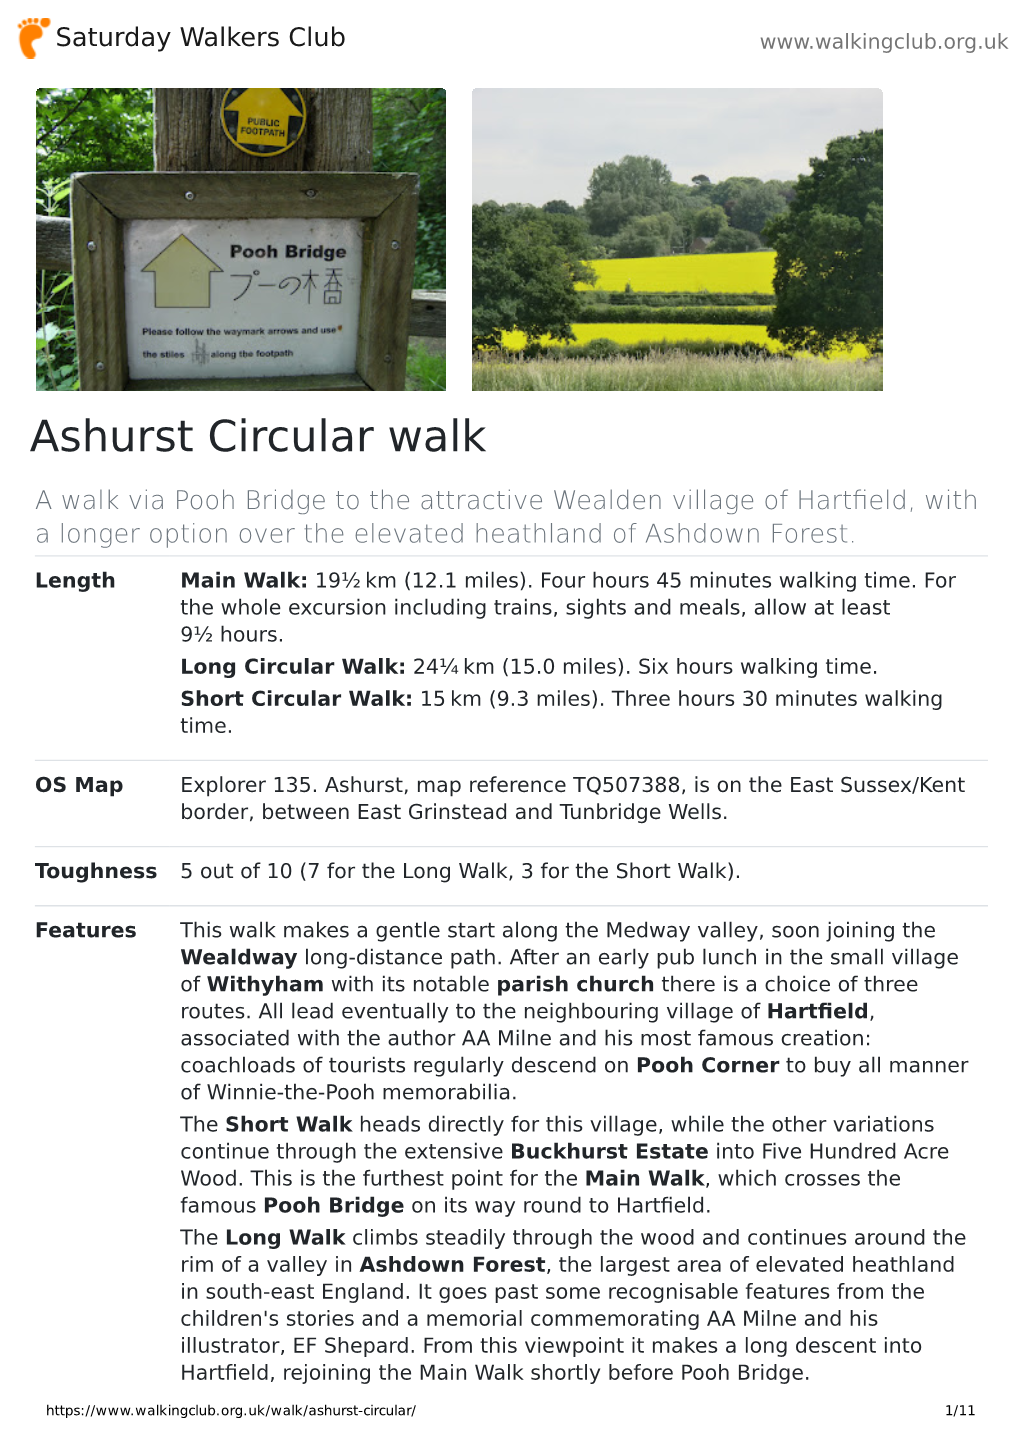 Ashurst Circular Walk